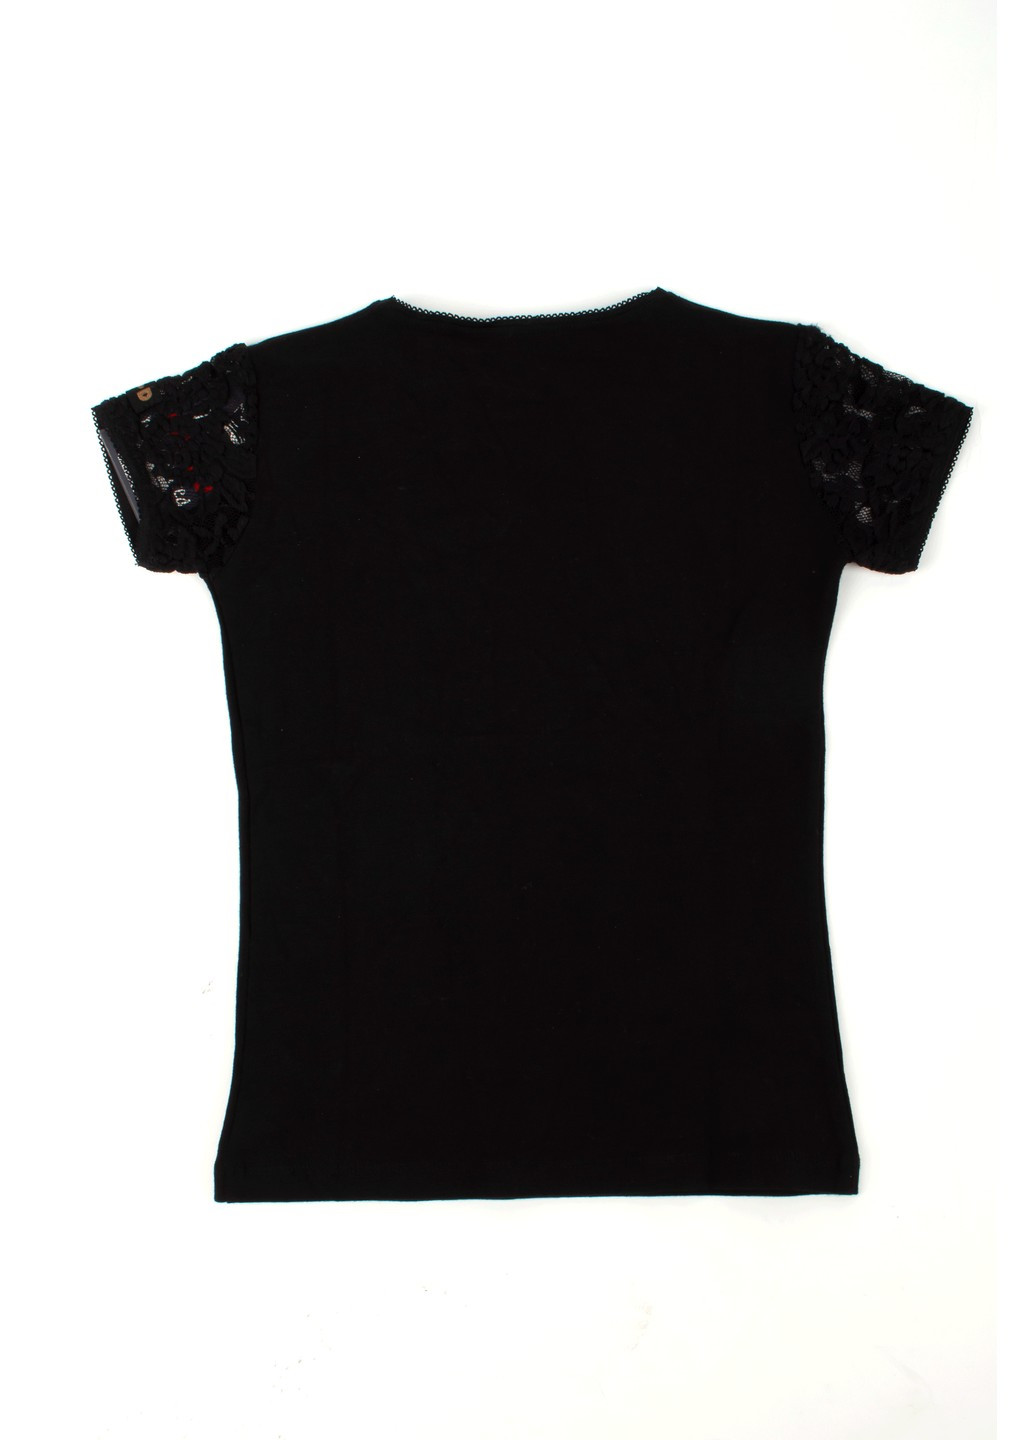 Черная летняя футболка на девочку tom-du черная с собакой TOM DU